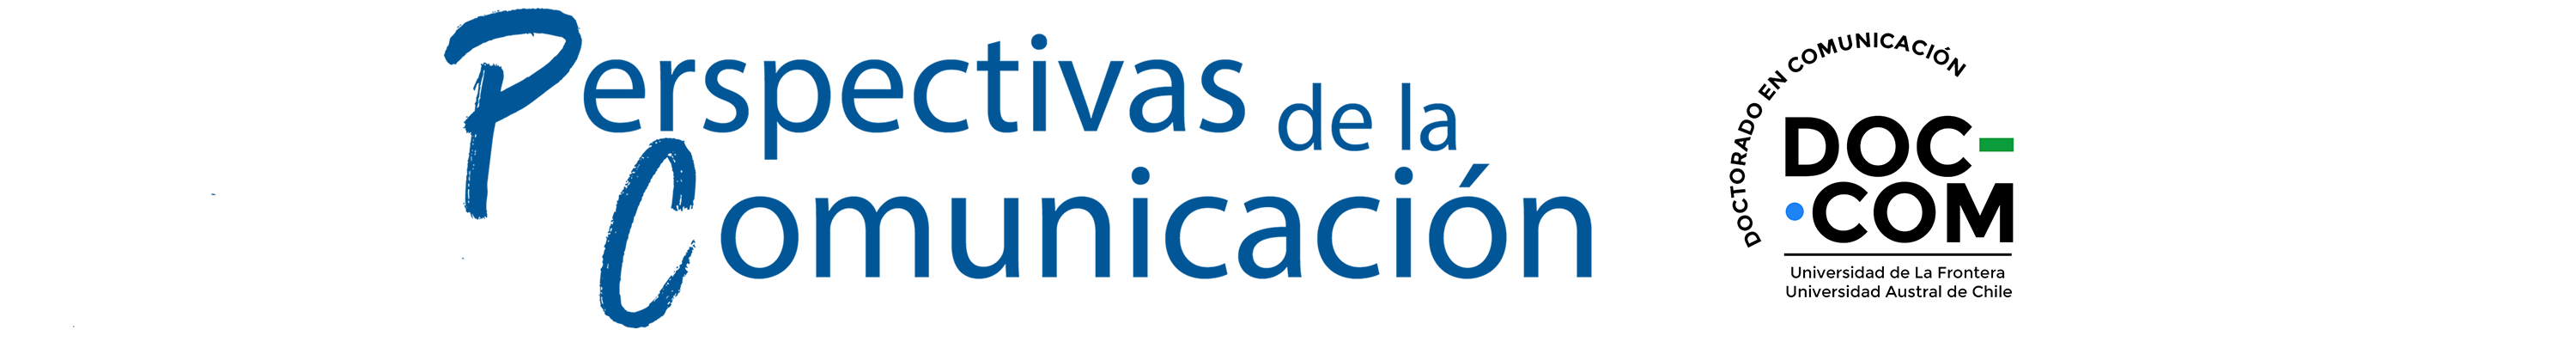 Logo revista Perspectivas de la Comunicación